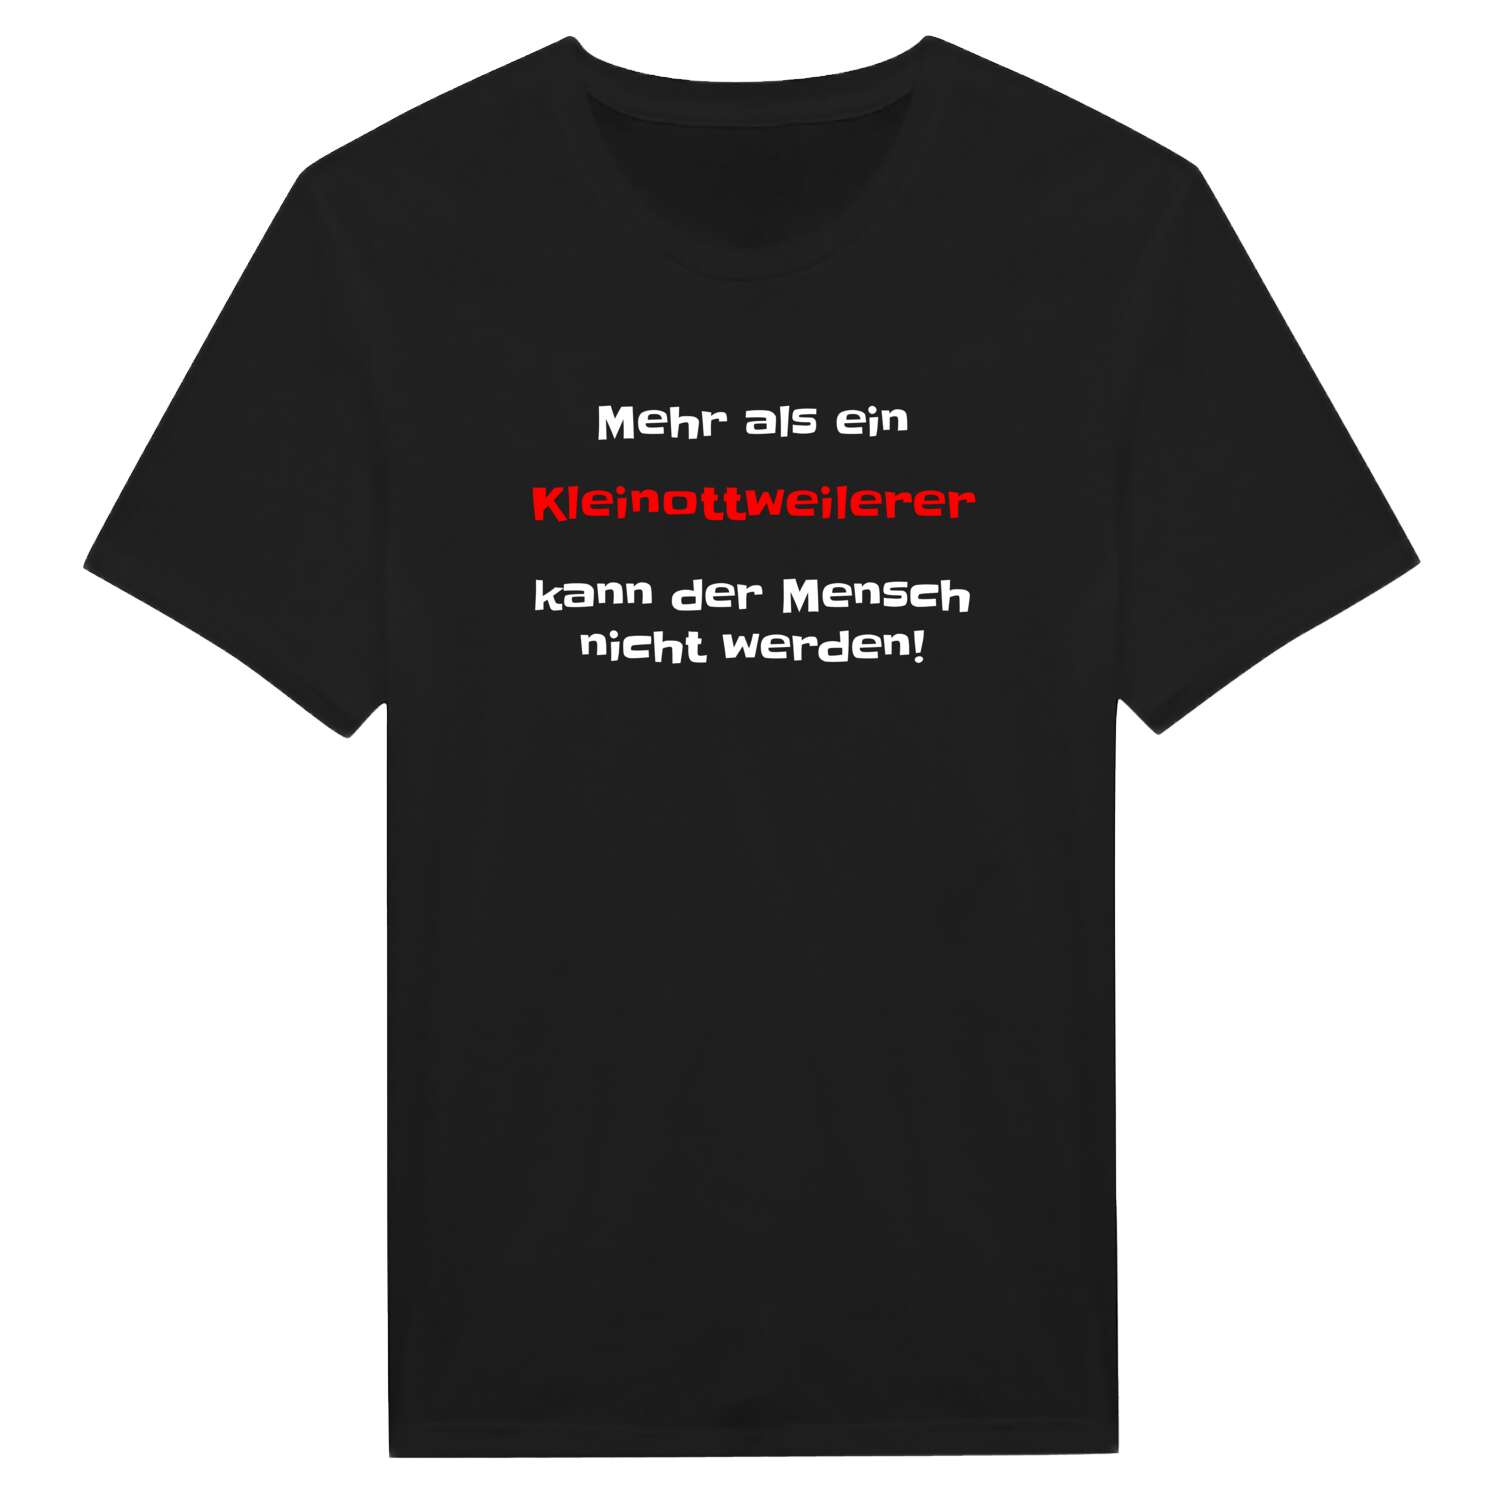 Kleinottweiler T-Shirt »Mehr als ein«